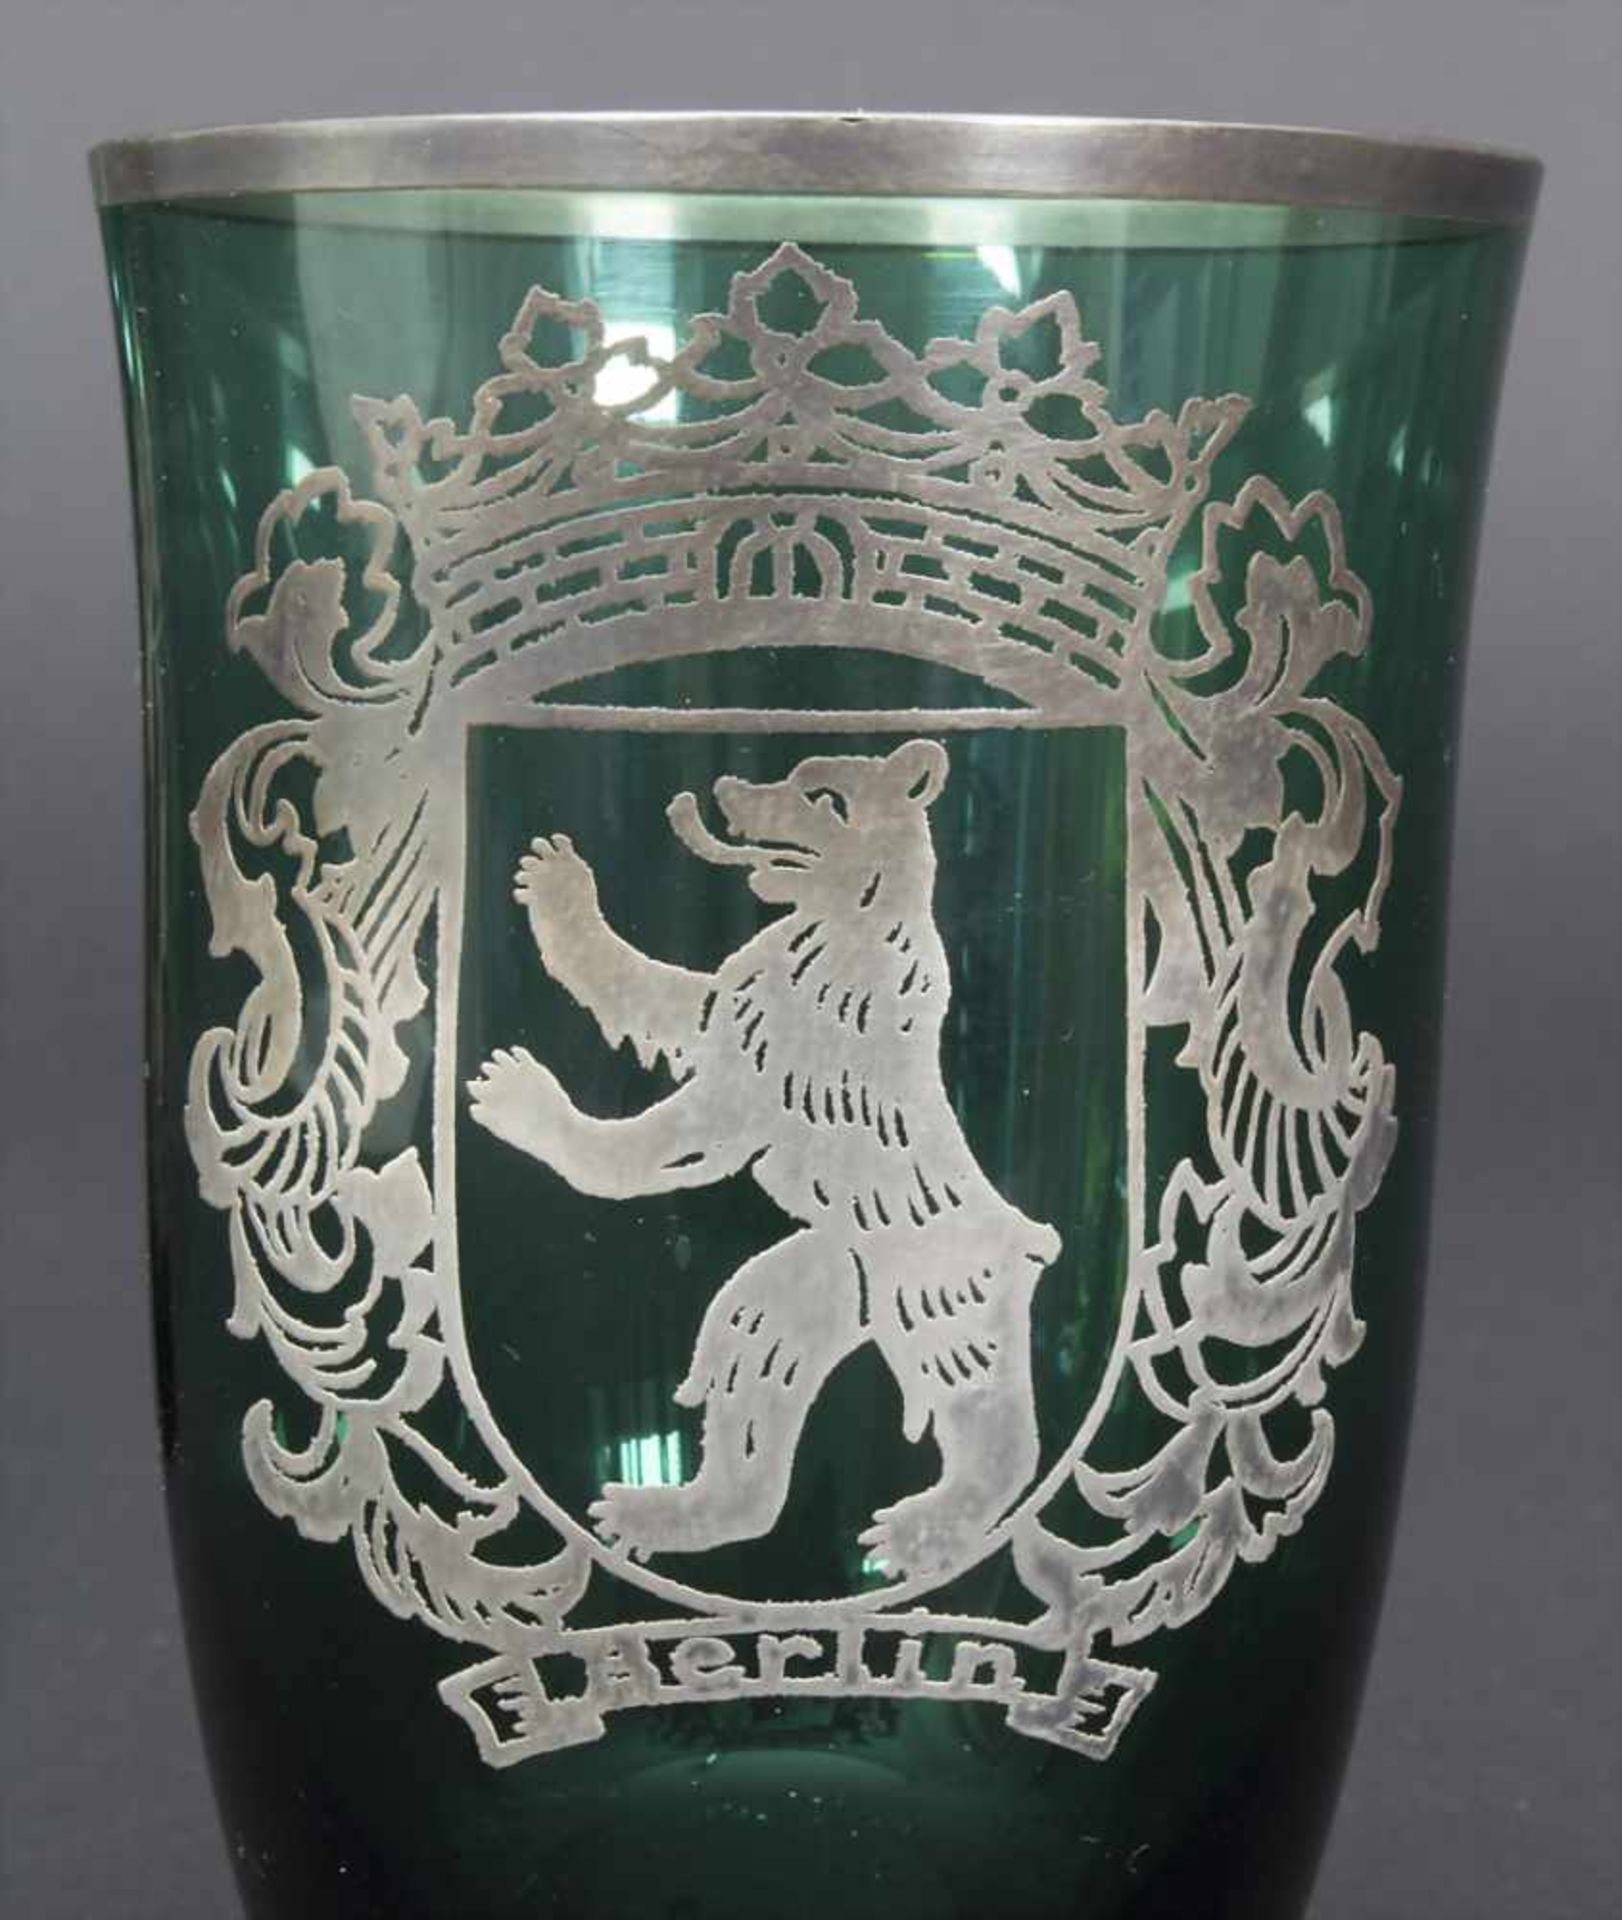 2 Gläser mit Silberauflage 'Berlin' / glasses with silver overlay 'Berlin'Material: grünes Glas - Bild 4 aus 4